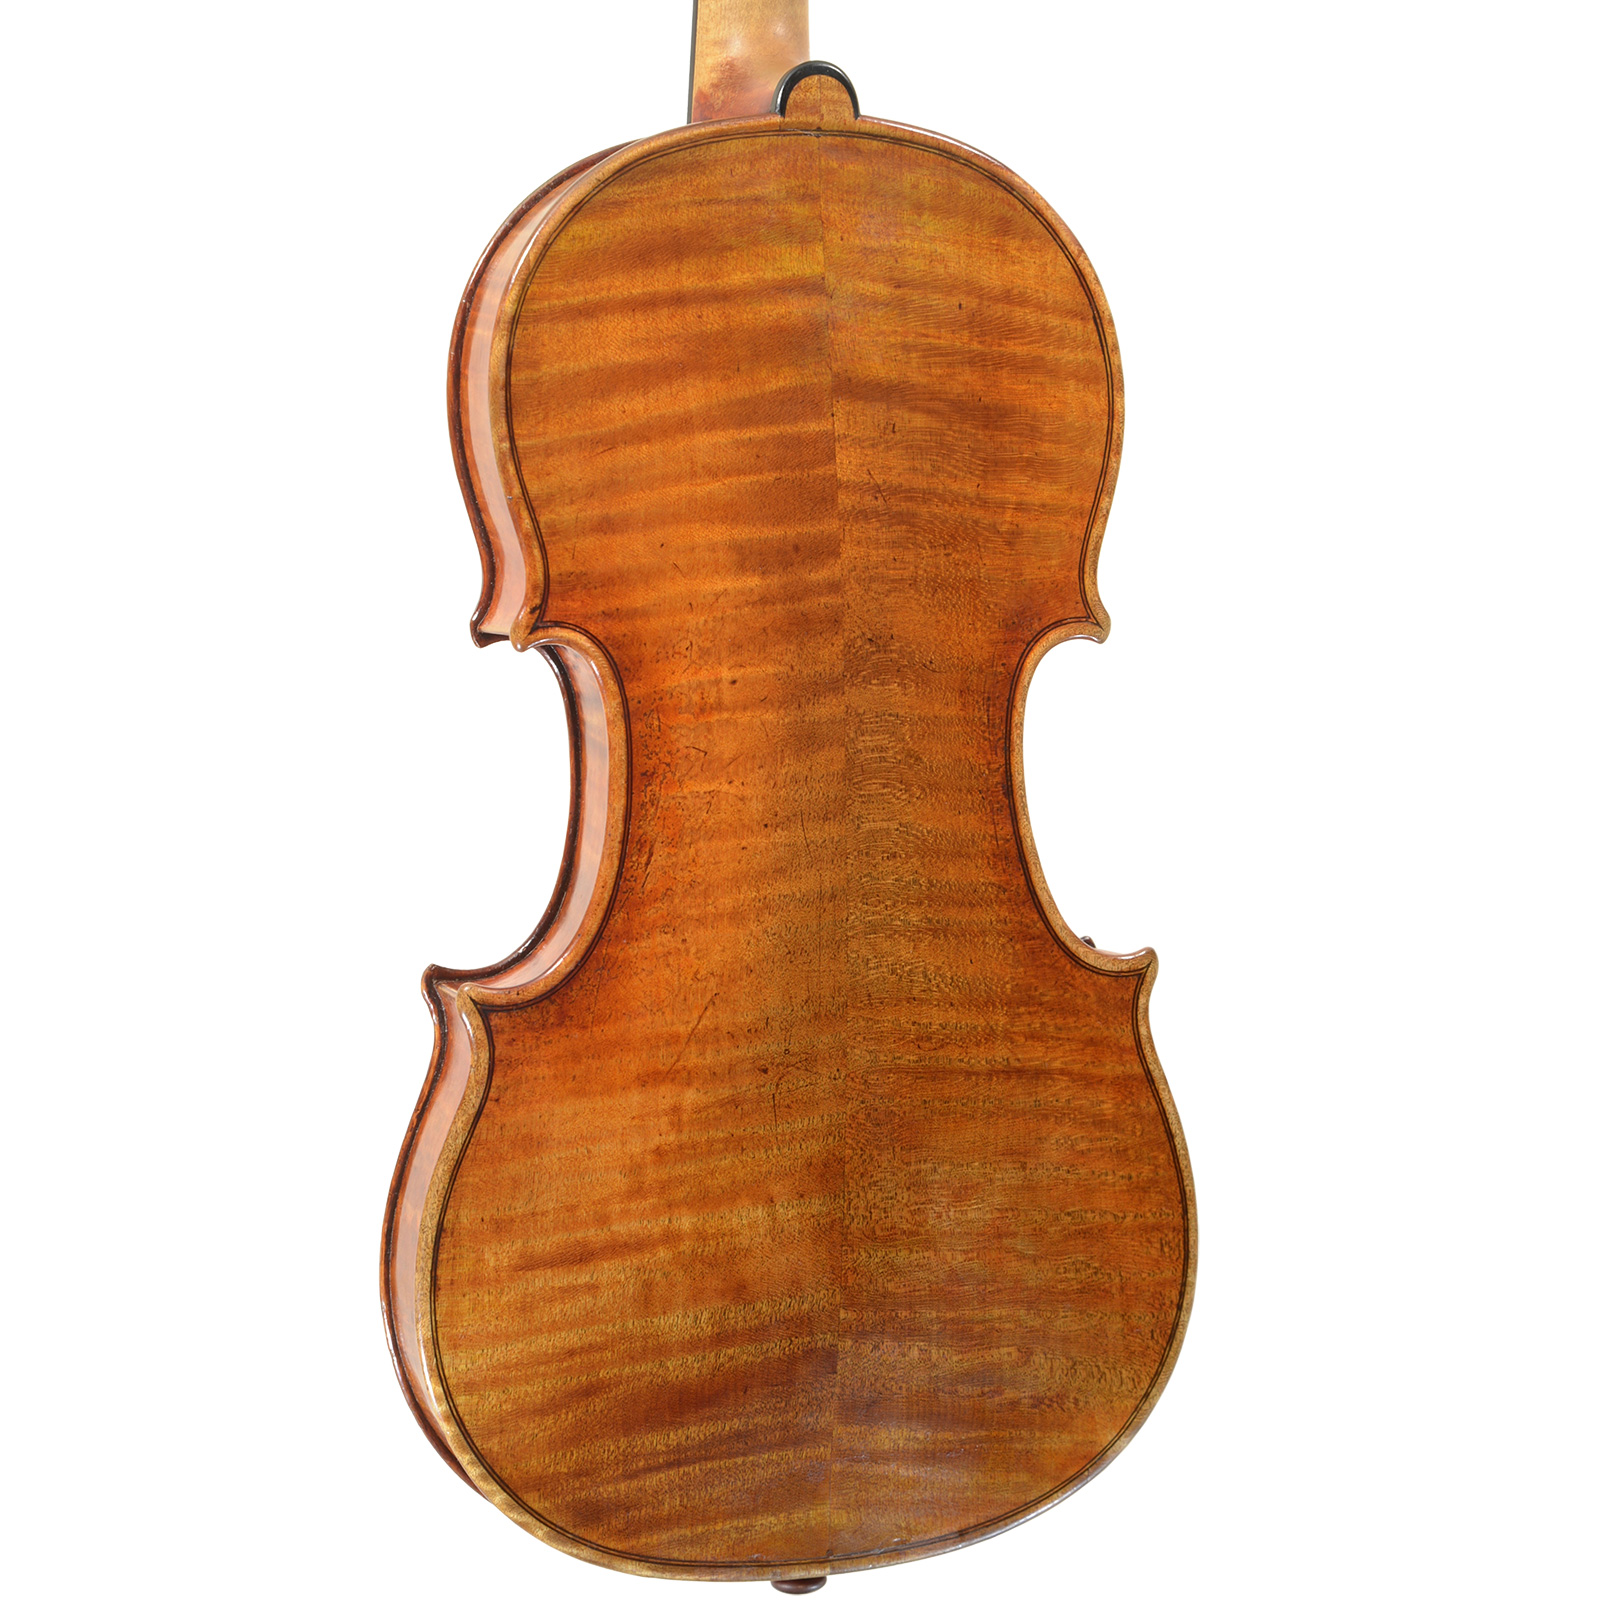 弦楽器専門店 ラルジュ ー販売、鑑定、修理、調整、買取ー バイオリン、ビオラ、チェロ、弓